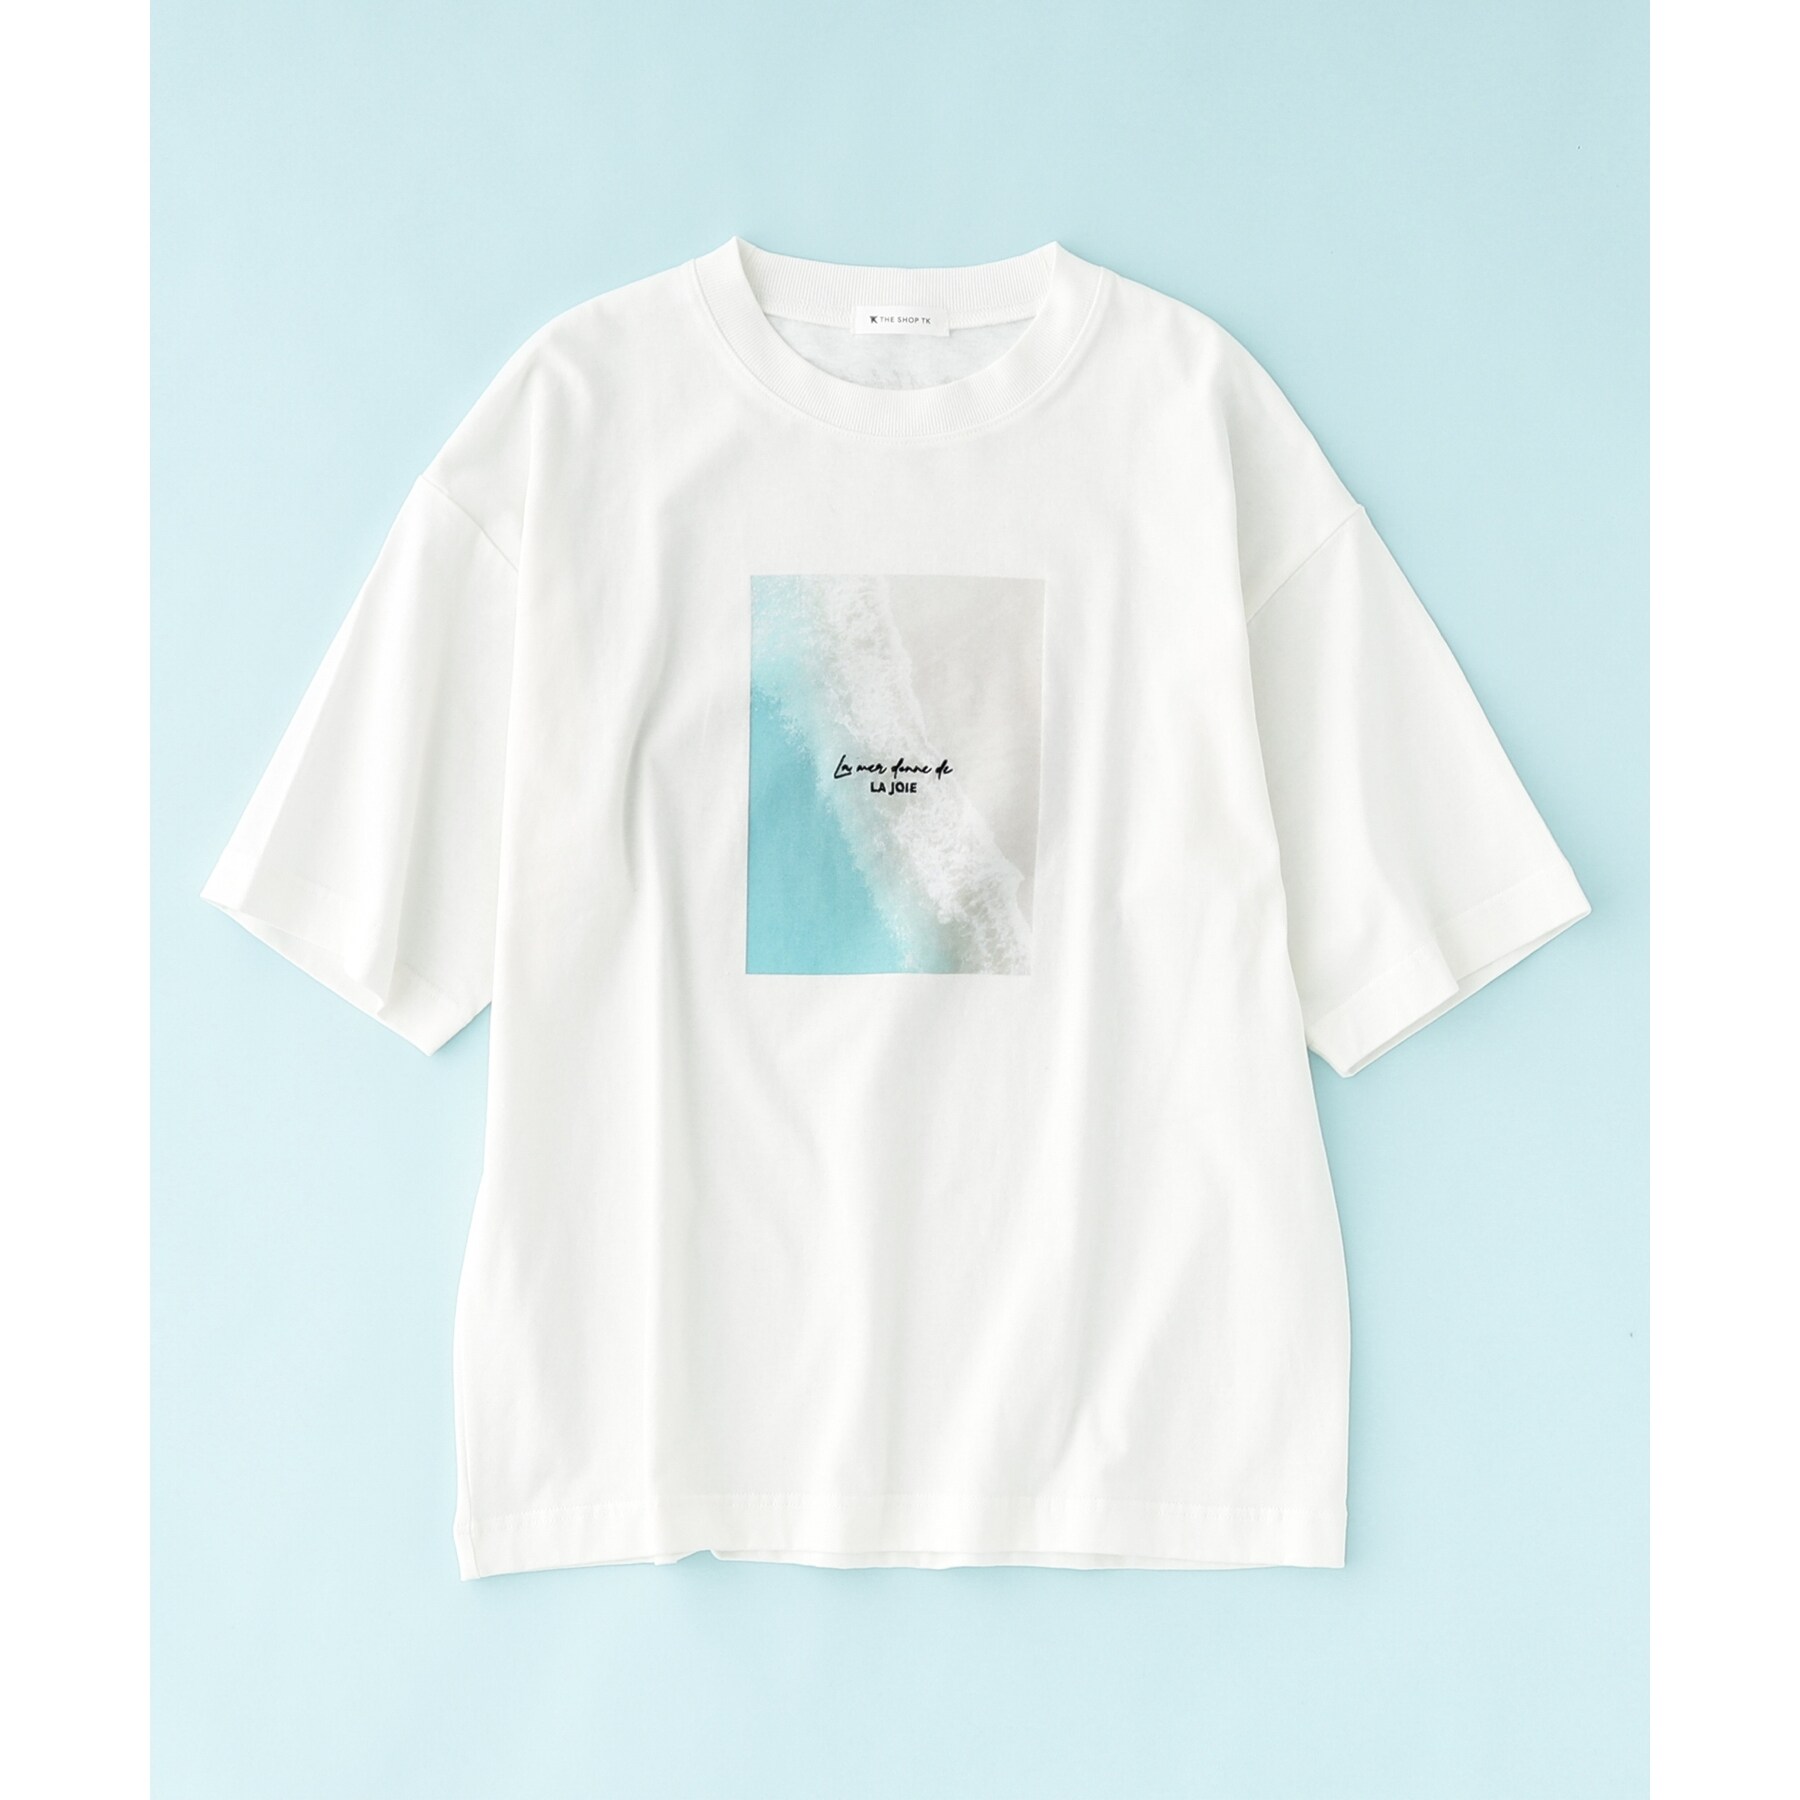 ザ ショップ ティーケー（メンズ）(THE SHOP TK(Men))の【サスティナブル素材】FRESH NATUREデザイン刺繍Tシャツ プリント43